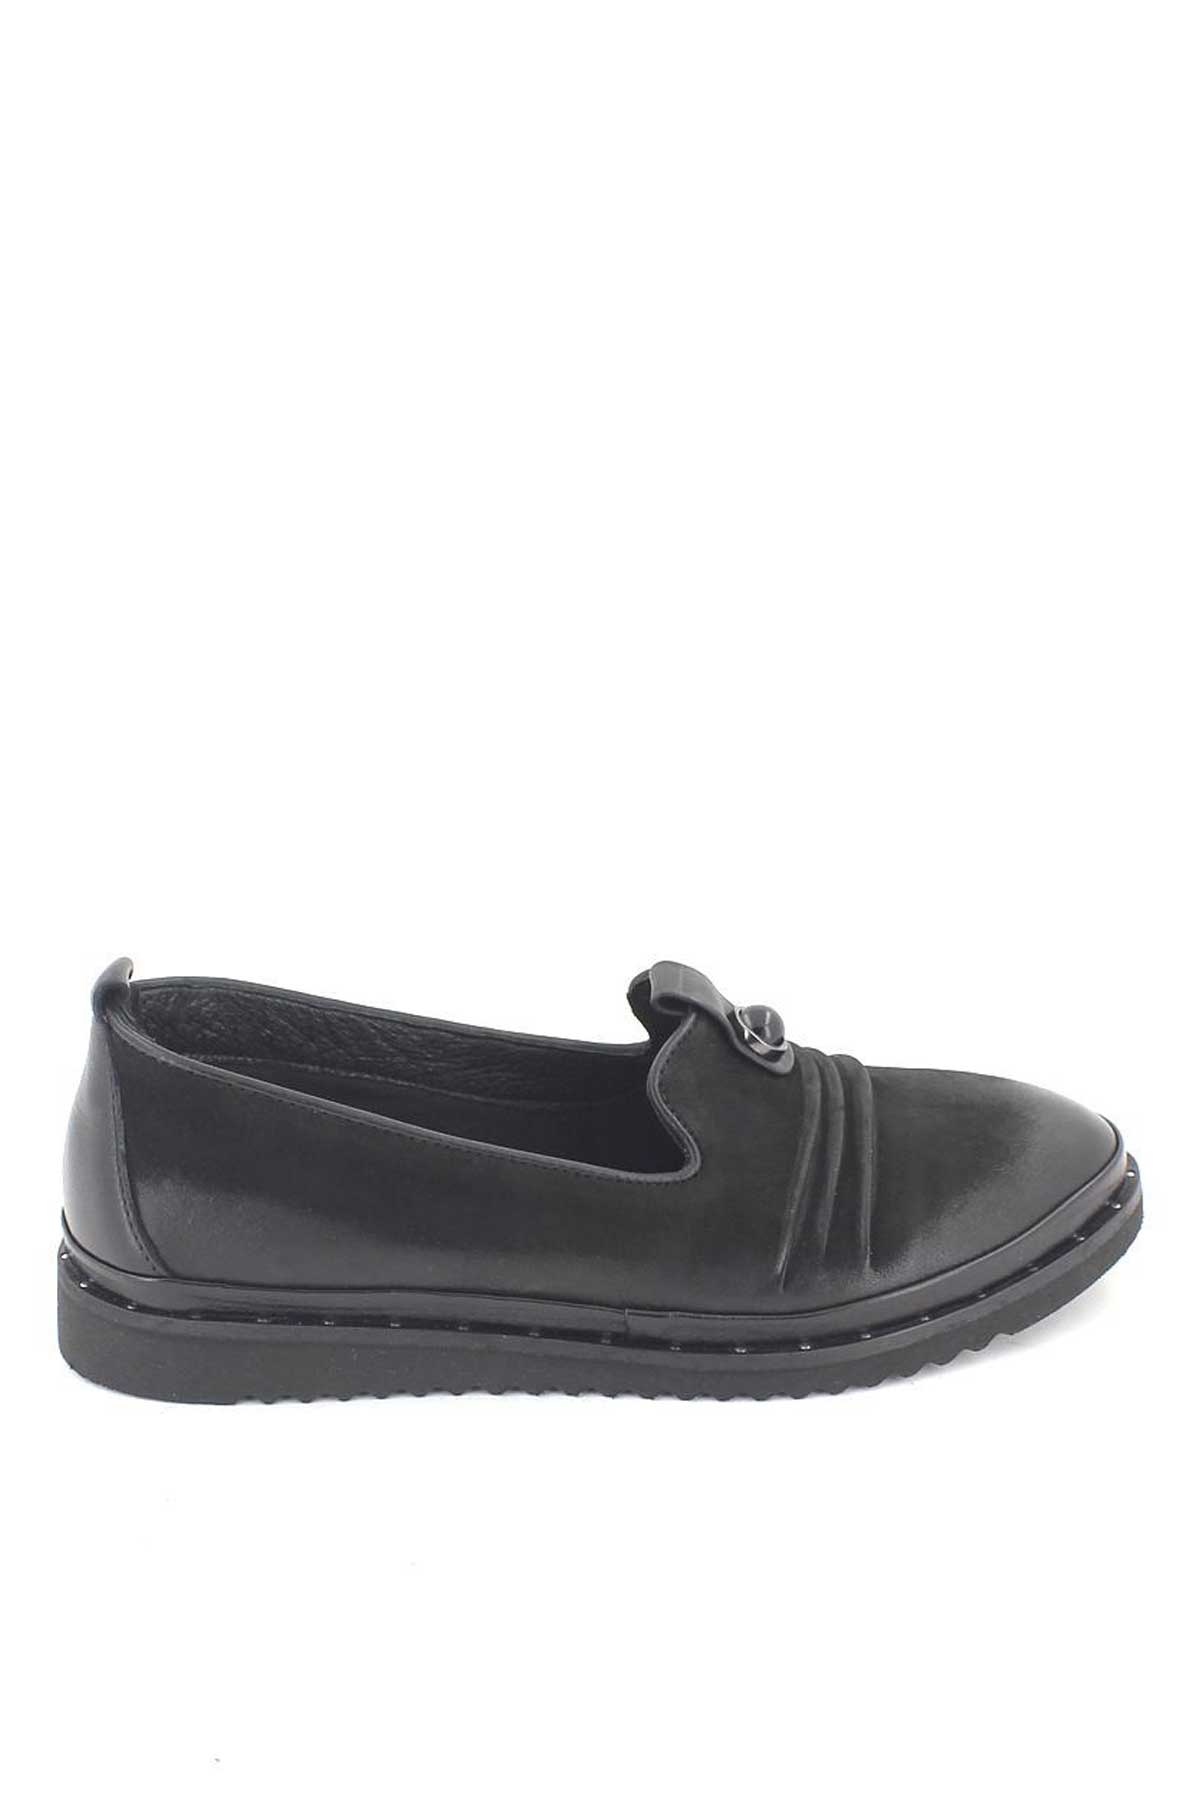 Kadın Deri Comfort Ayakkabı Siyah 1810021K